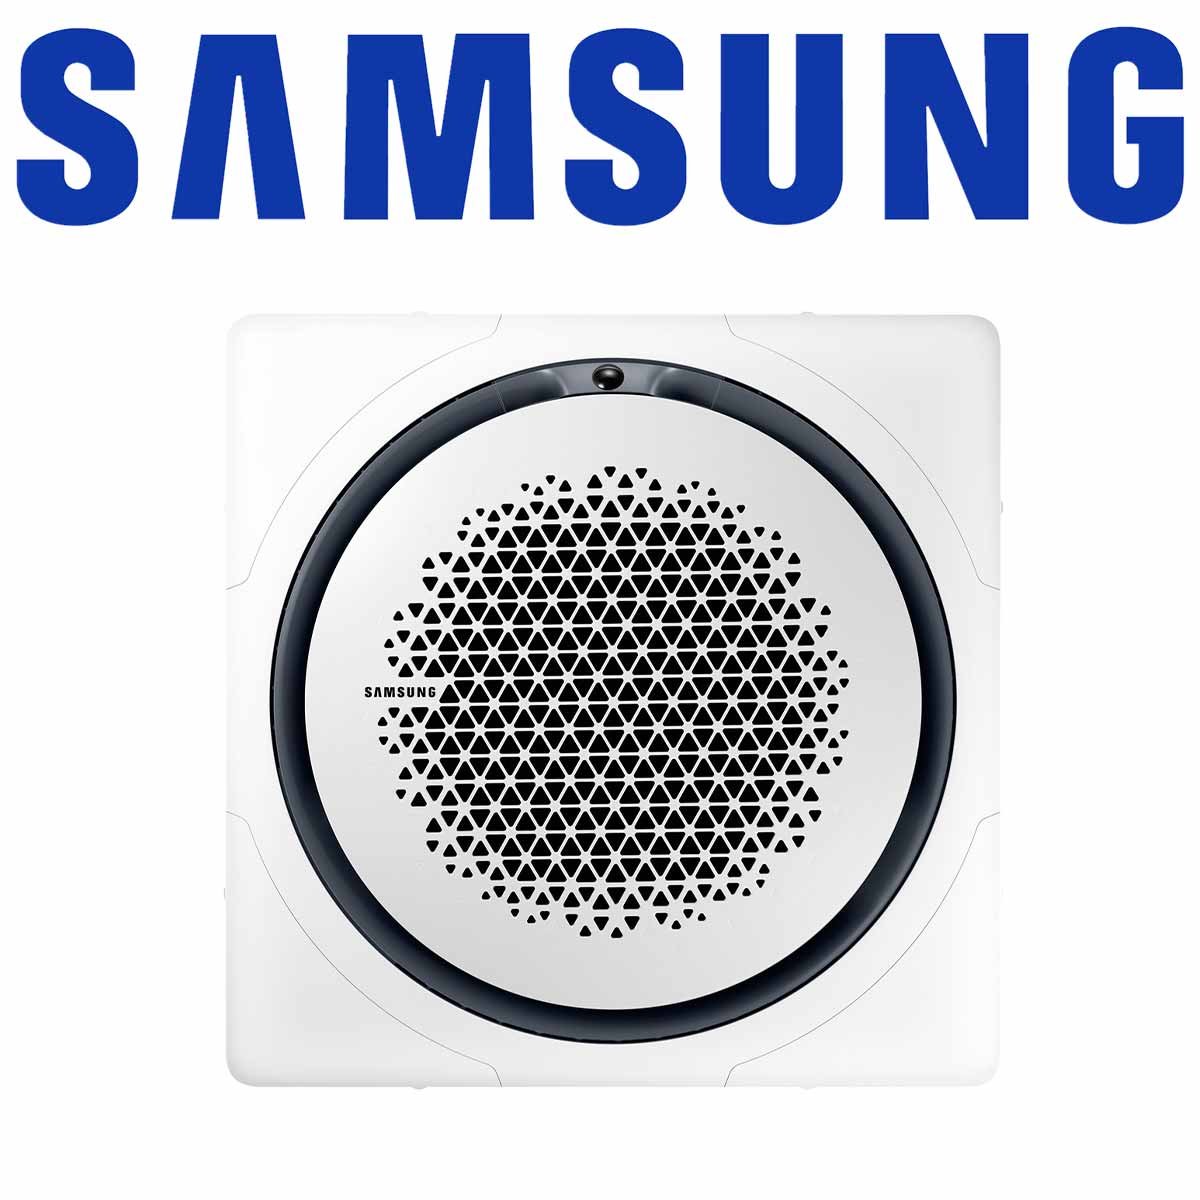 Samsung AC 071 WindFree 360° Kassette & Paneel quadratisch weiß... von SAMSUNG